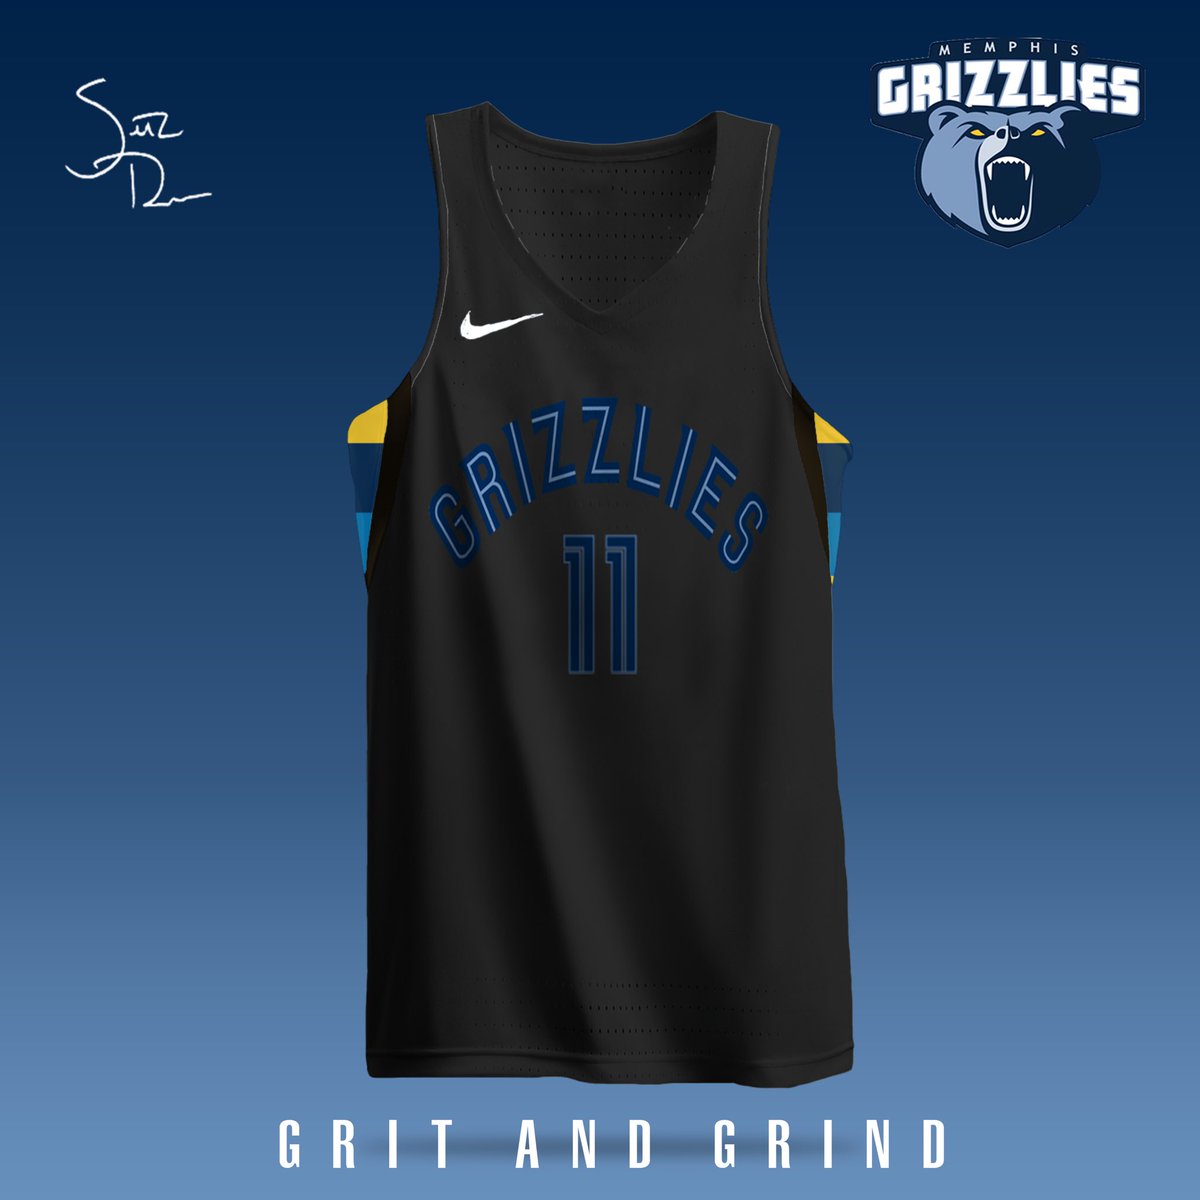 Memphis Grizzlies Jersey Concepts. (Via Djossuppah Art) on twitter. : r/ memphisgrizzlies